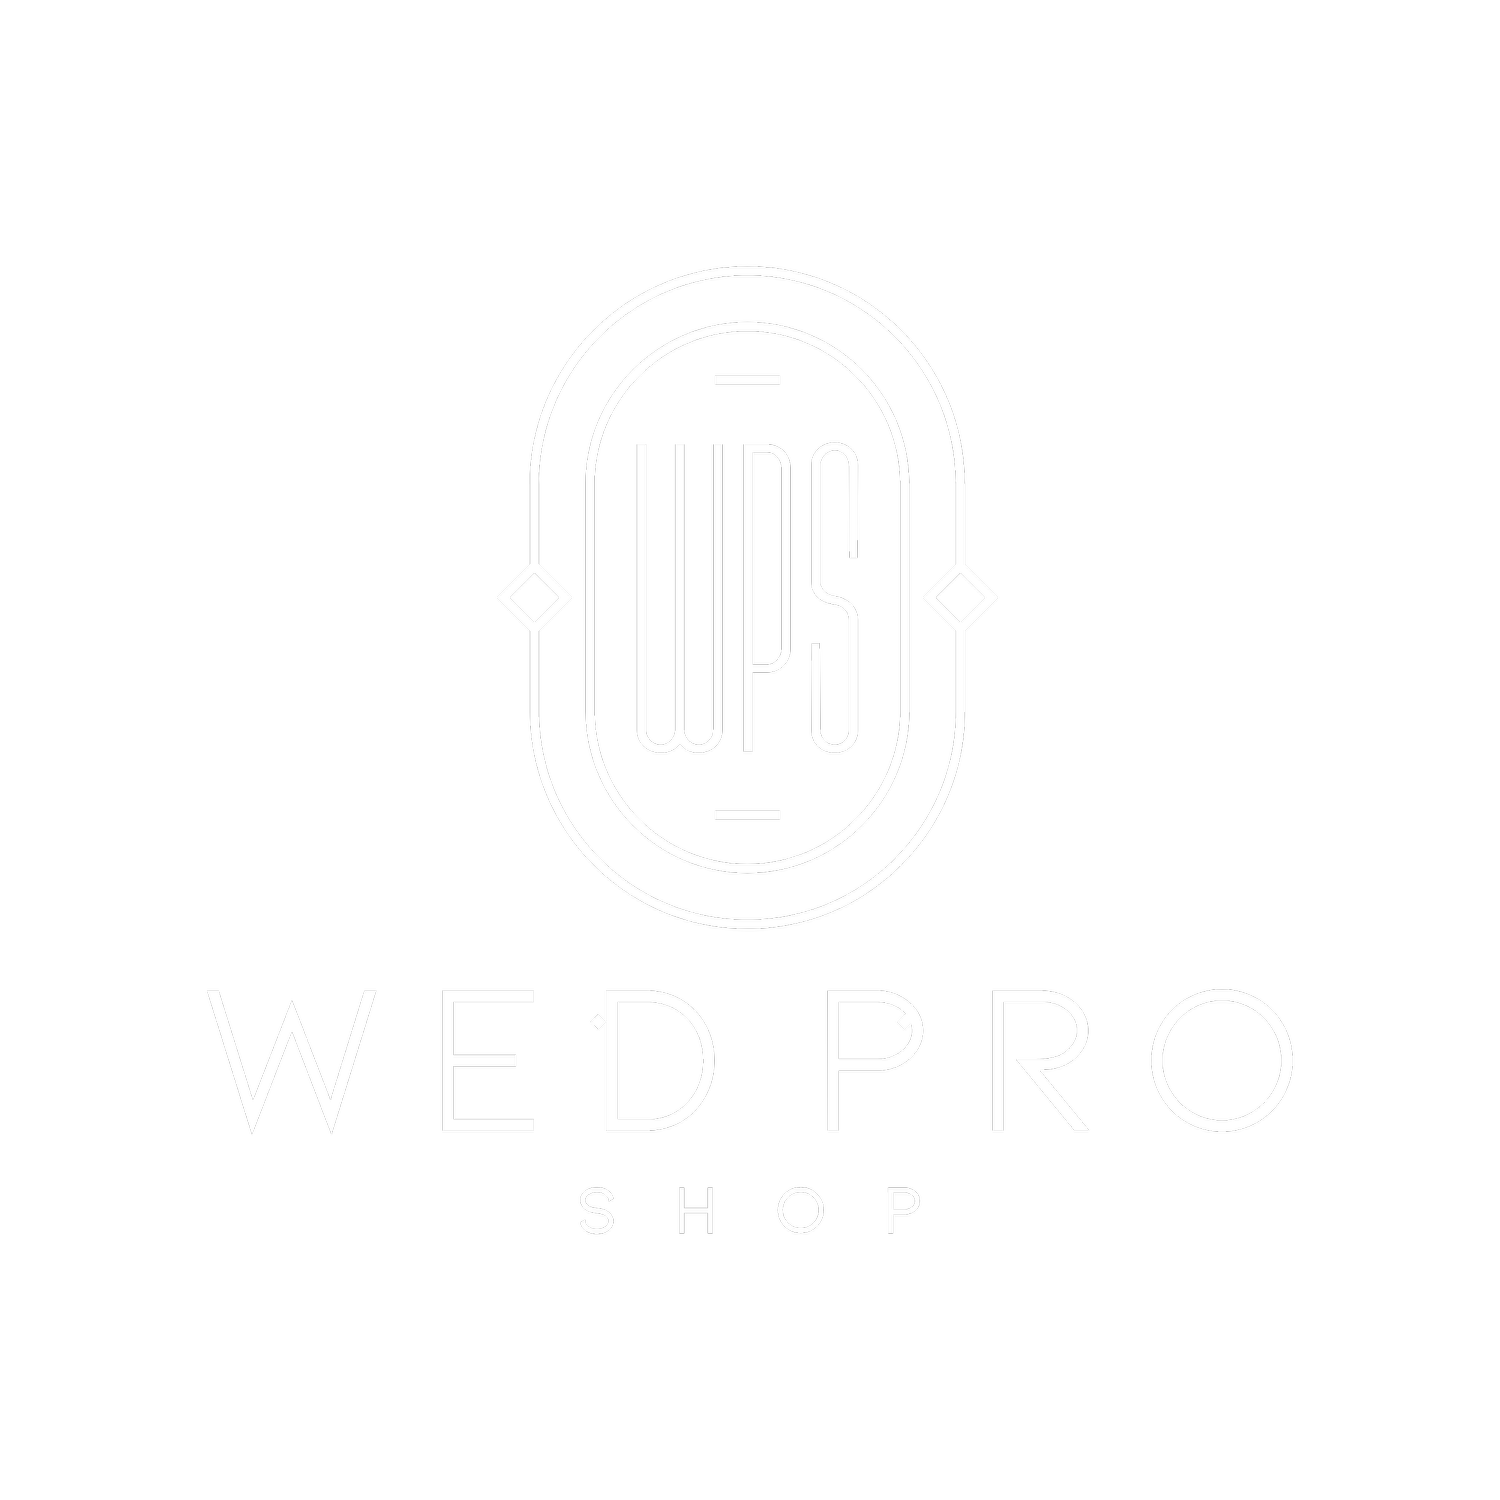 WedProShop